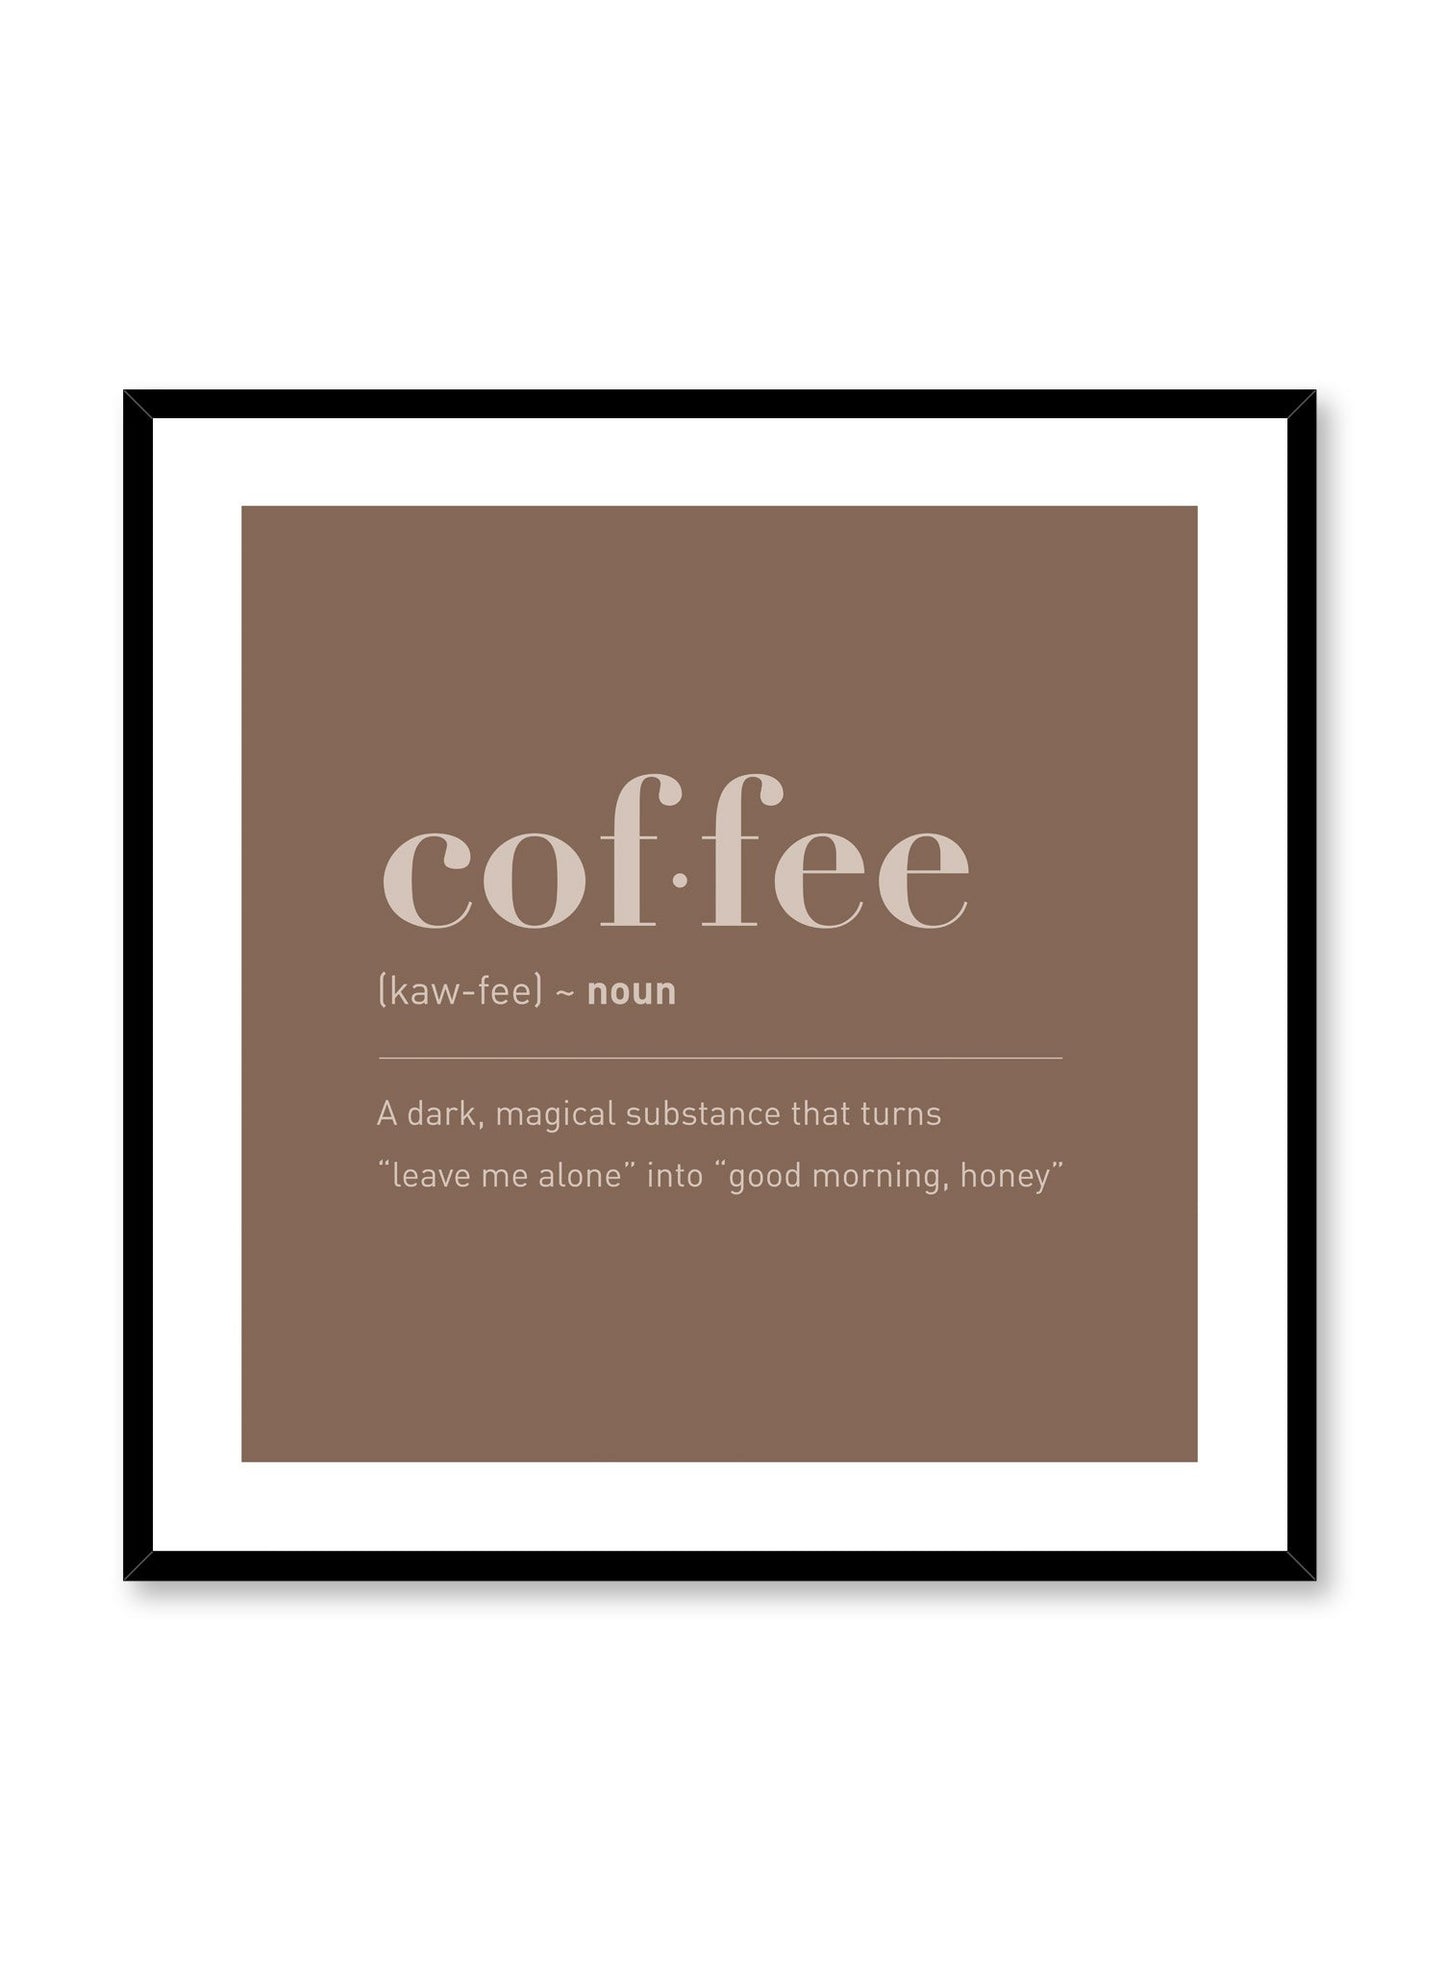 Coffee in Espresso, Poster